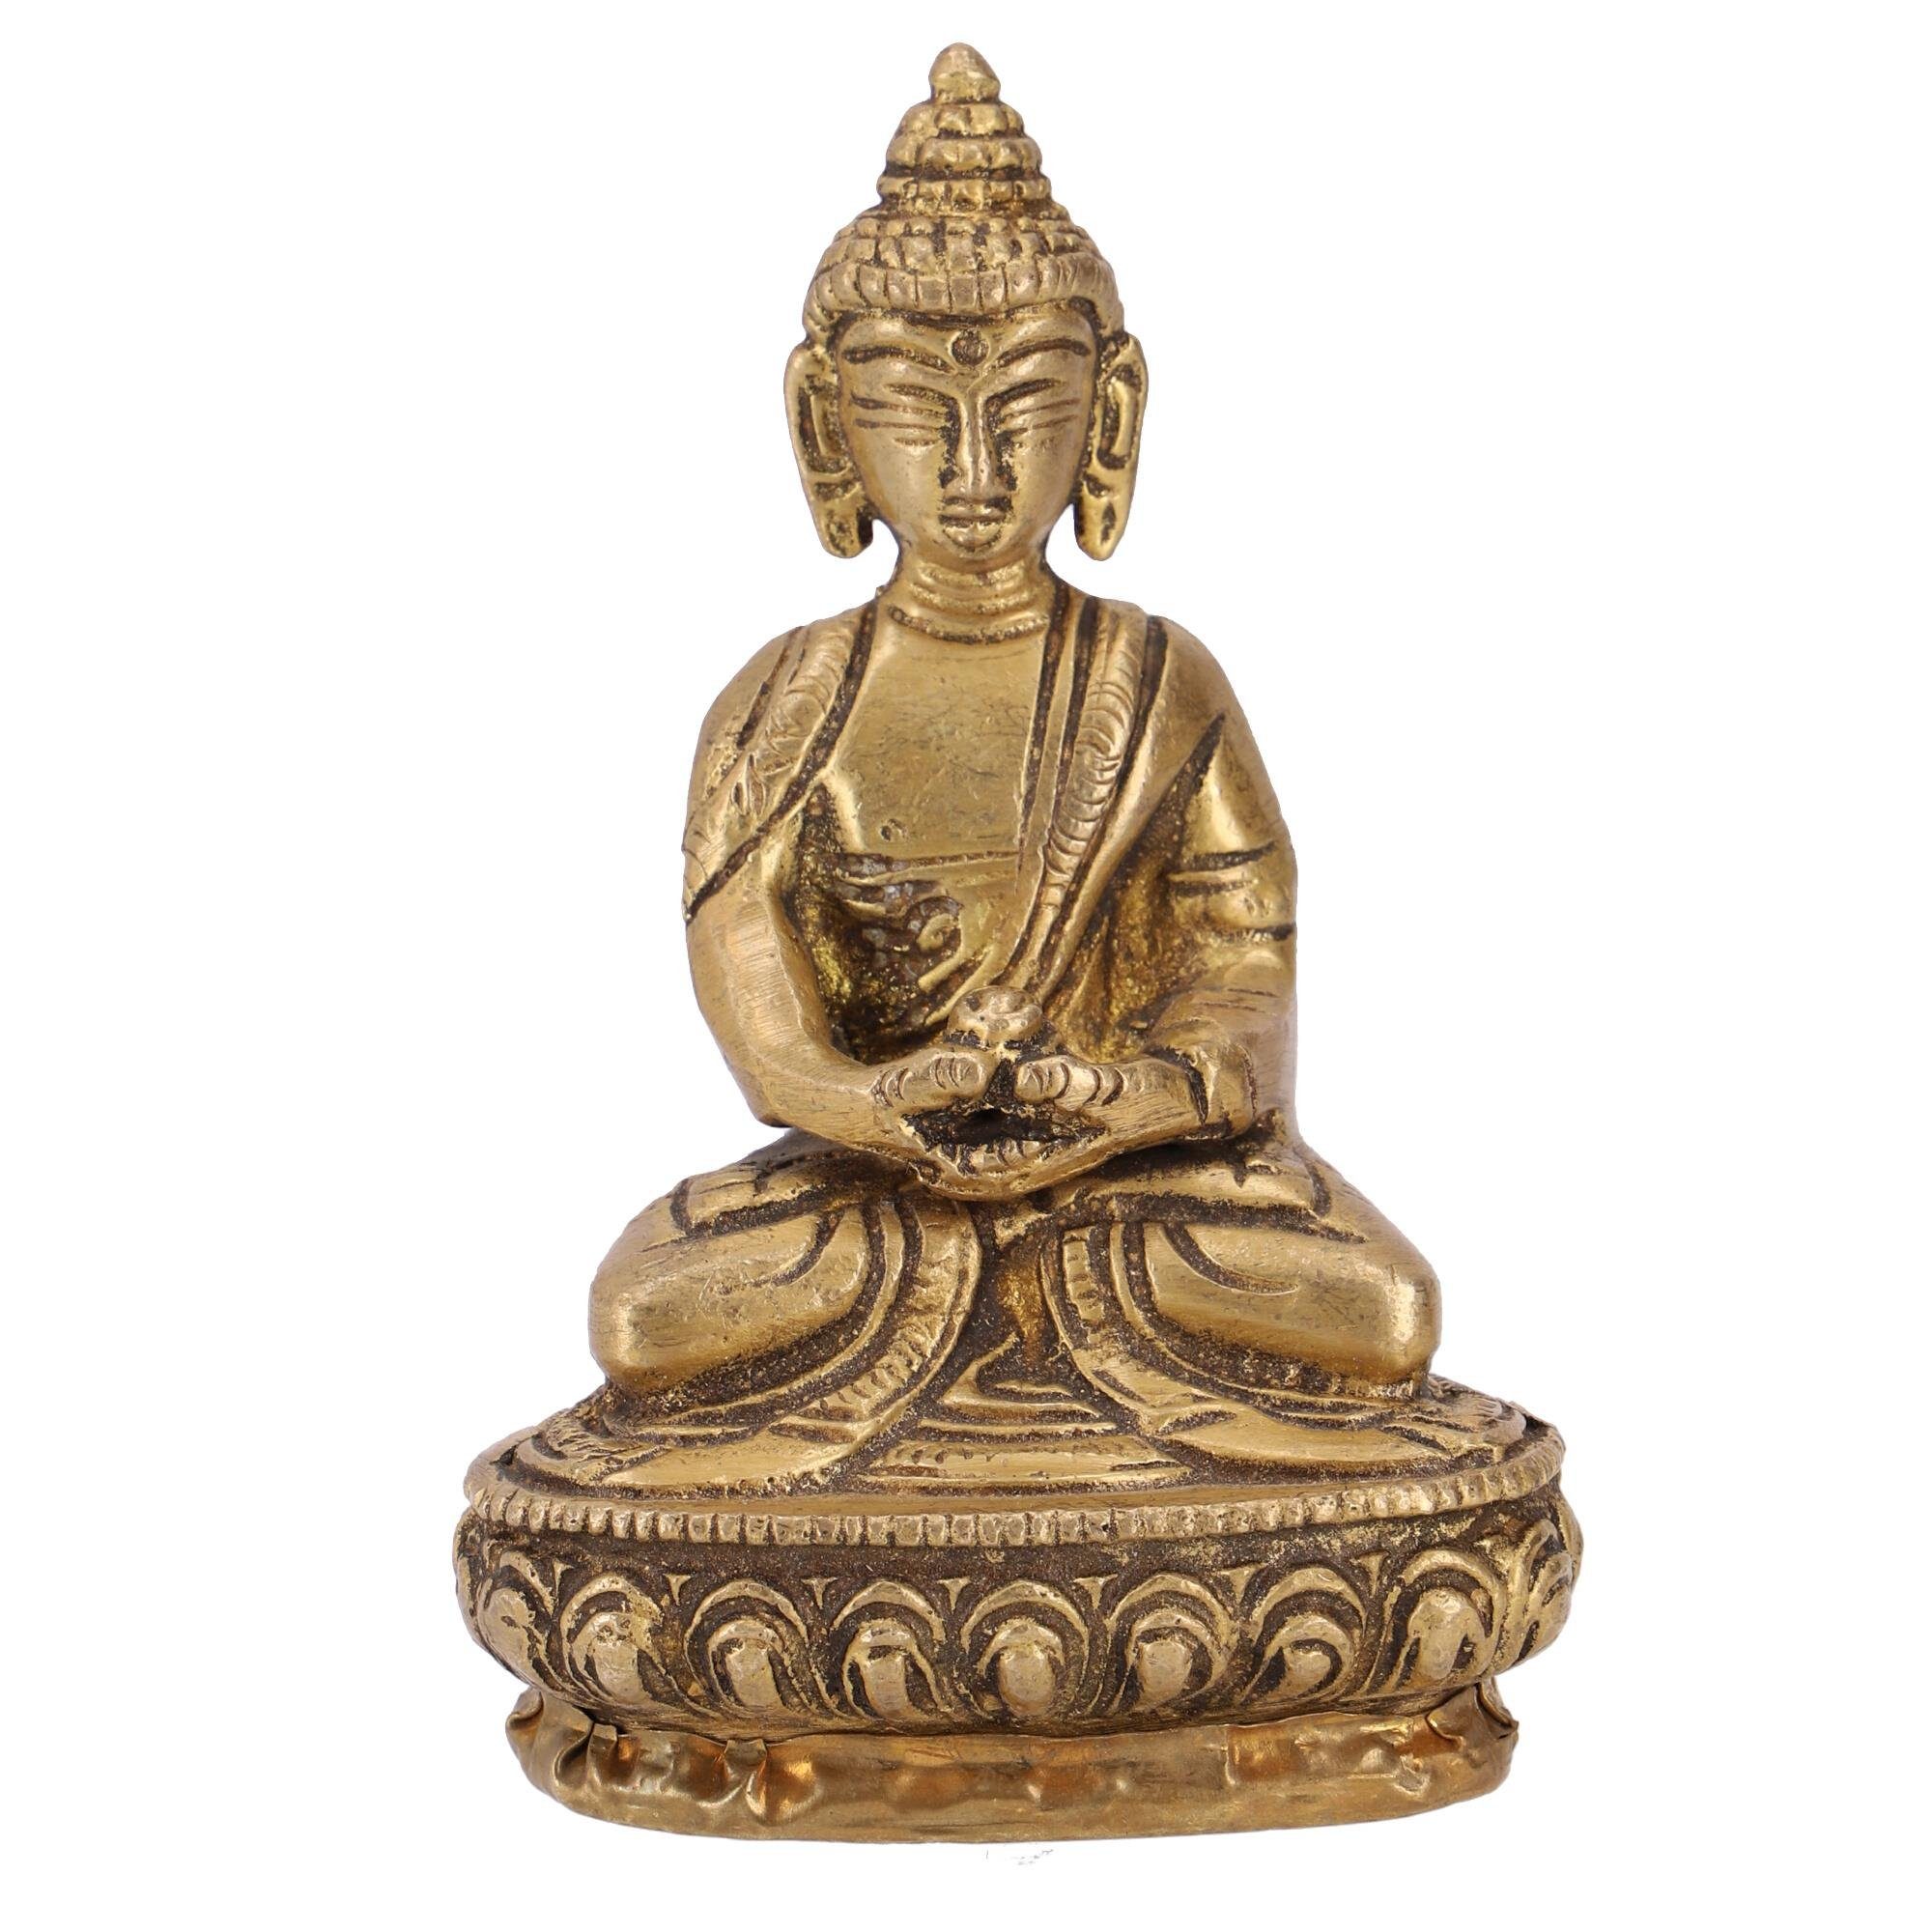 [Am beliebtesten] Guru-Shop Buddhafigur Buddha 10 Statue cm Mudra aus Dhyana Messing 